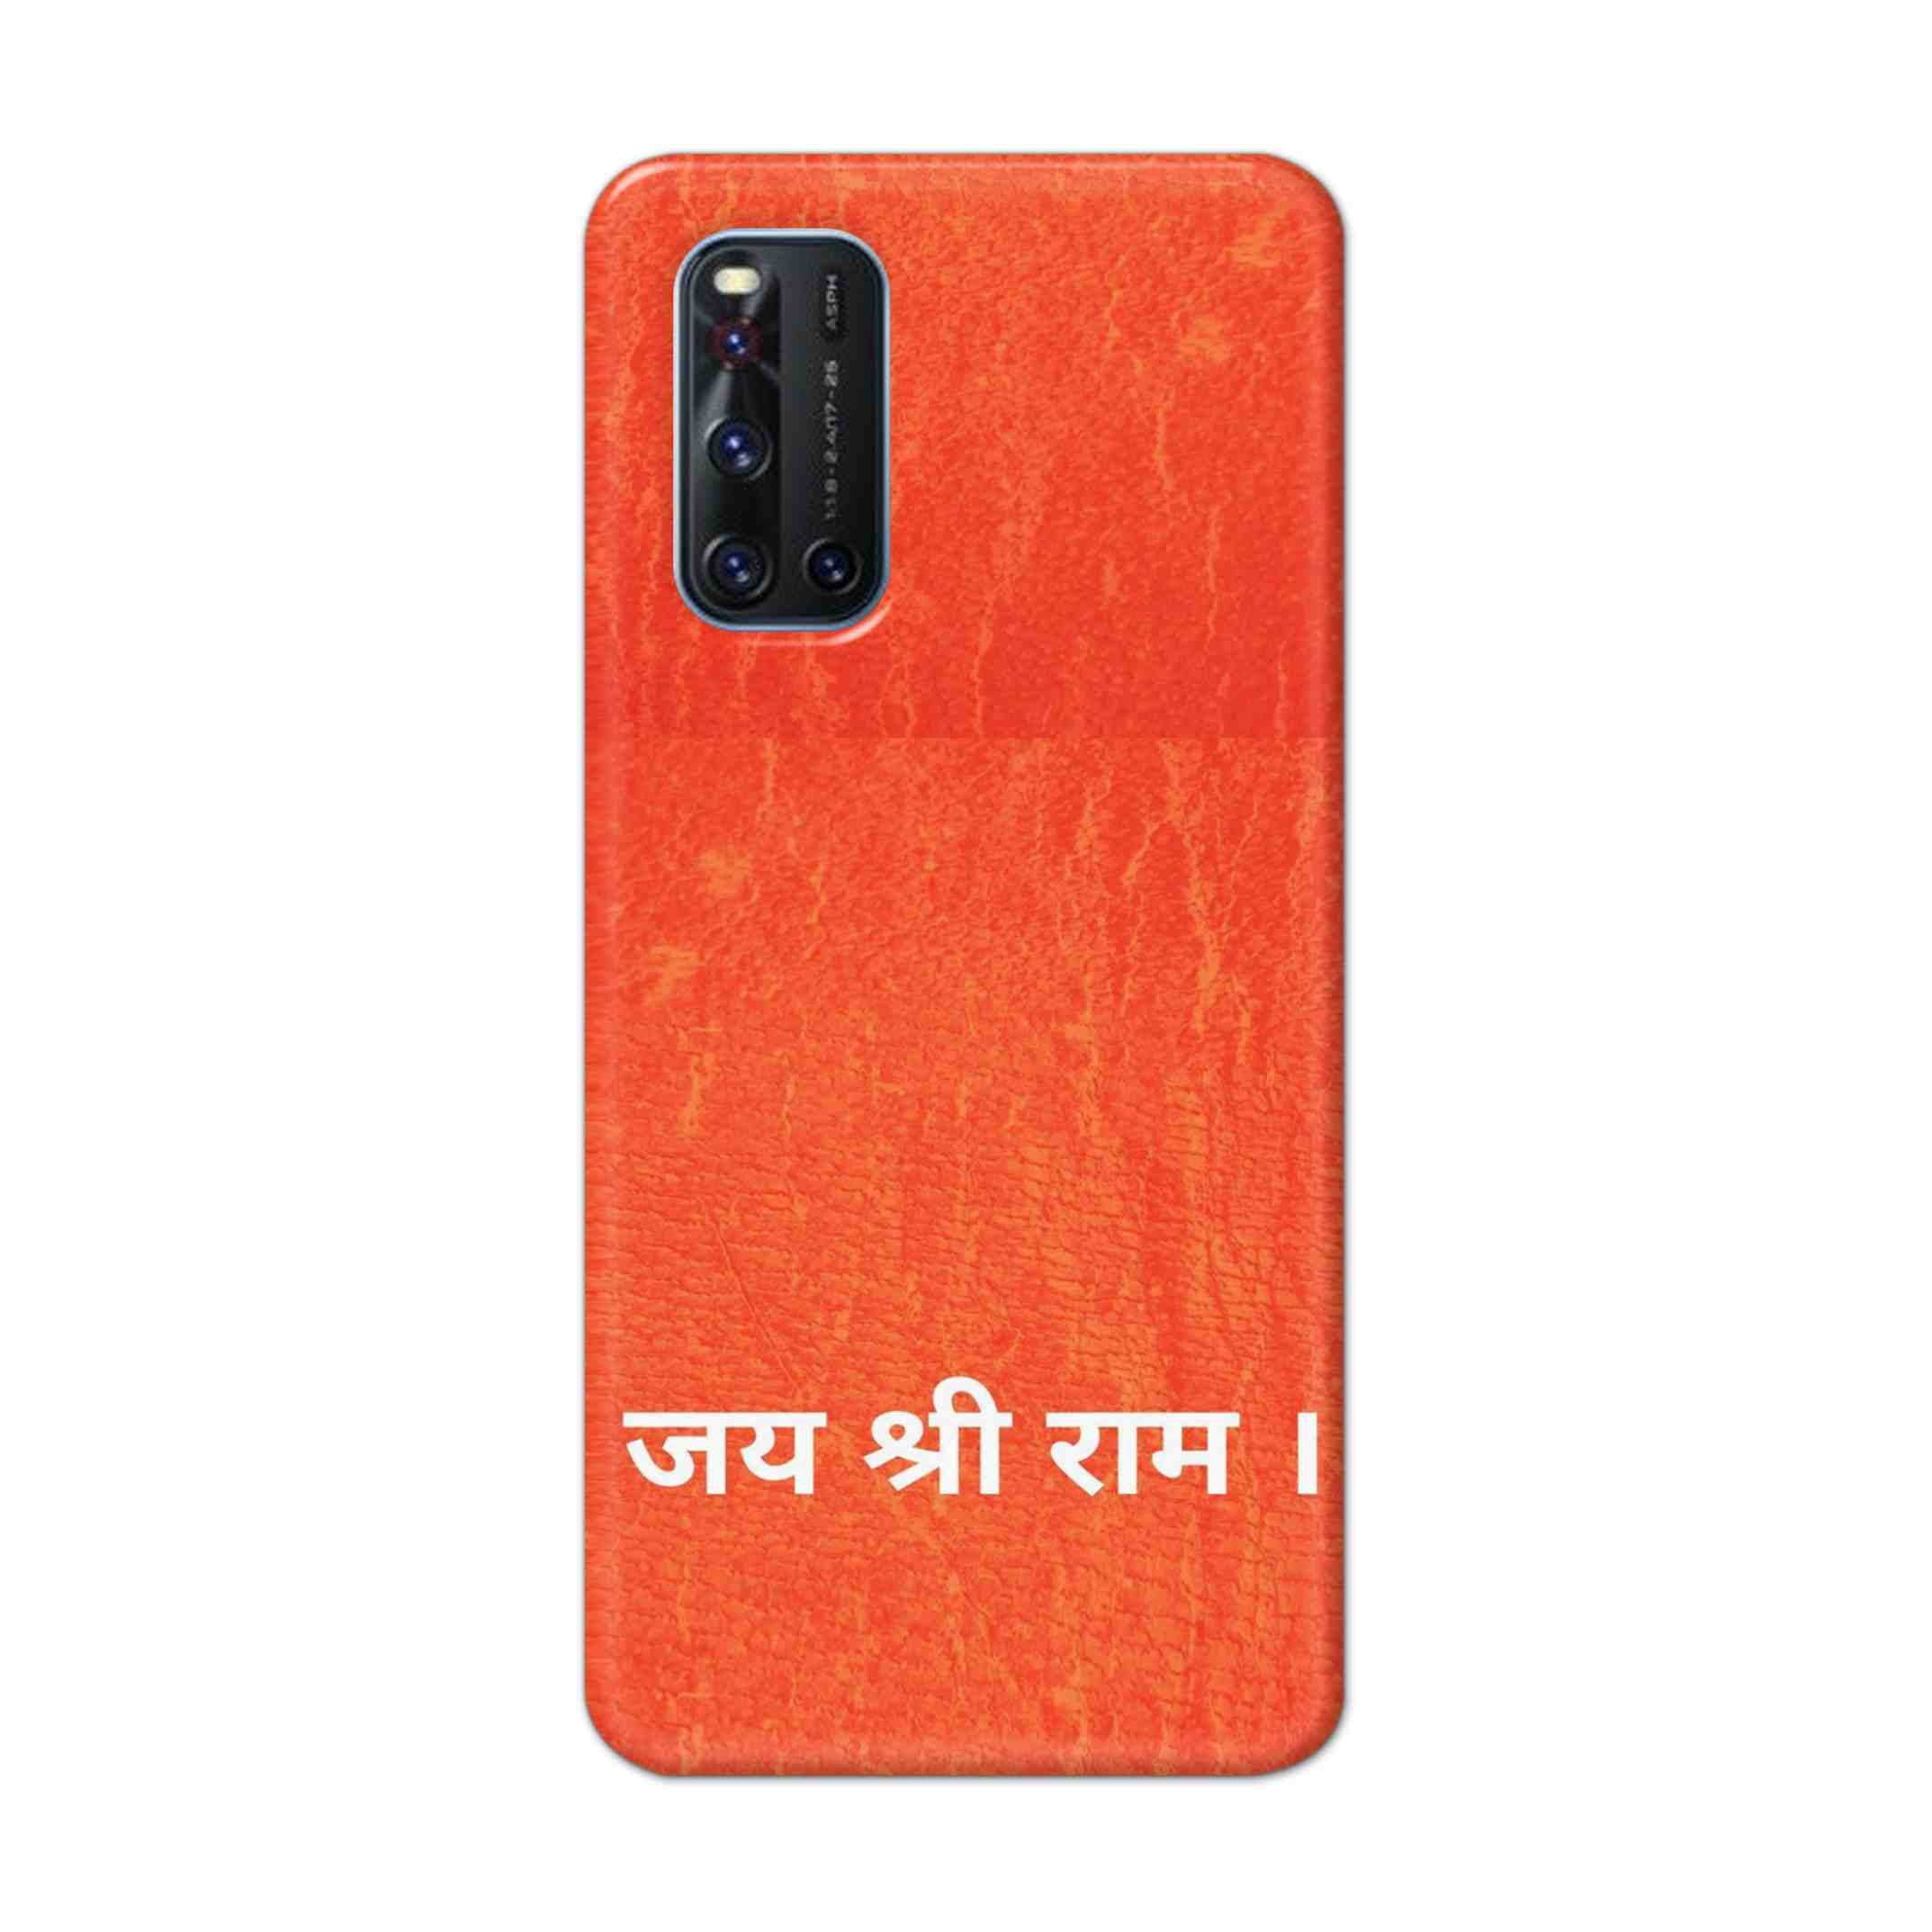 Buy Jai Shree Ram Hard Back Mobile Phone Case Cover For VivoV19 Online